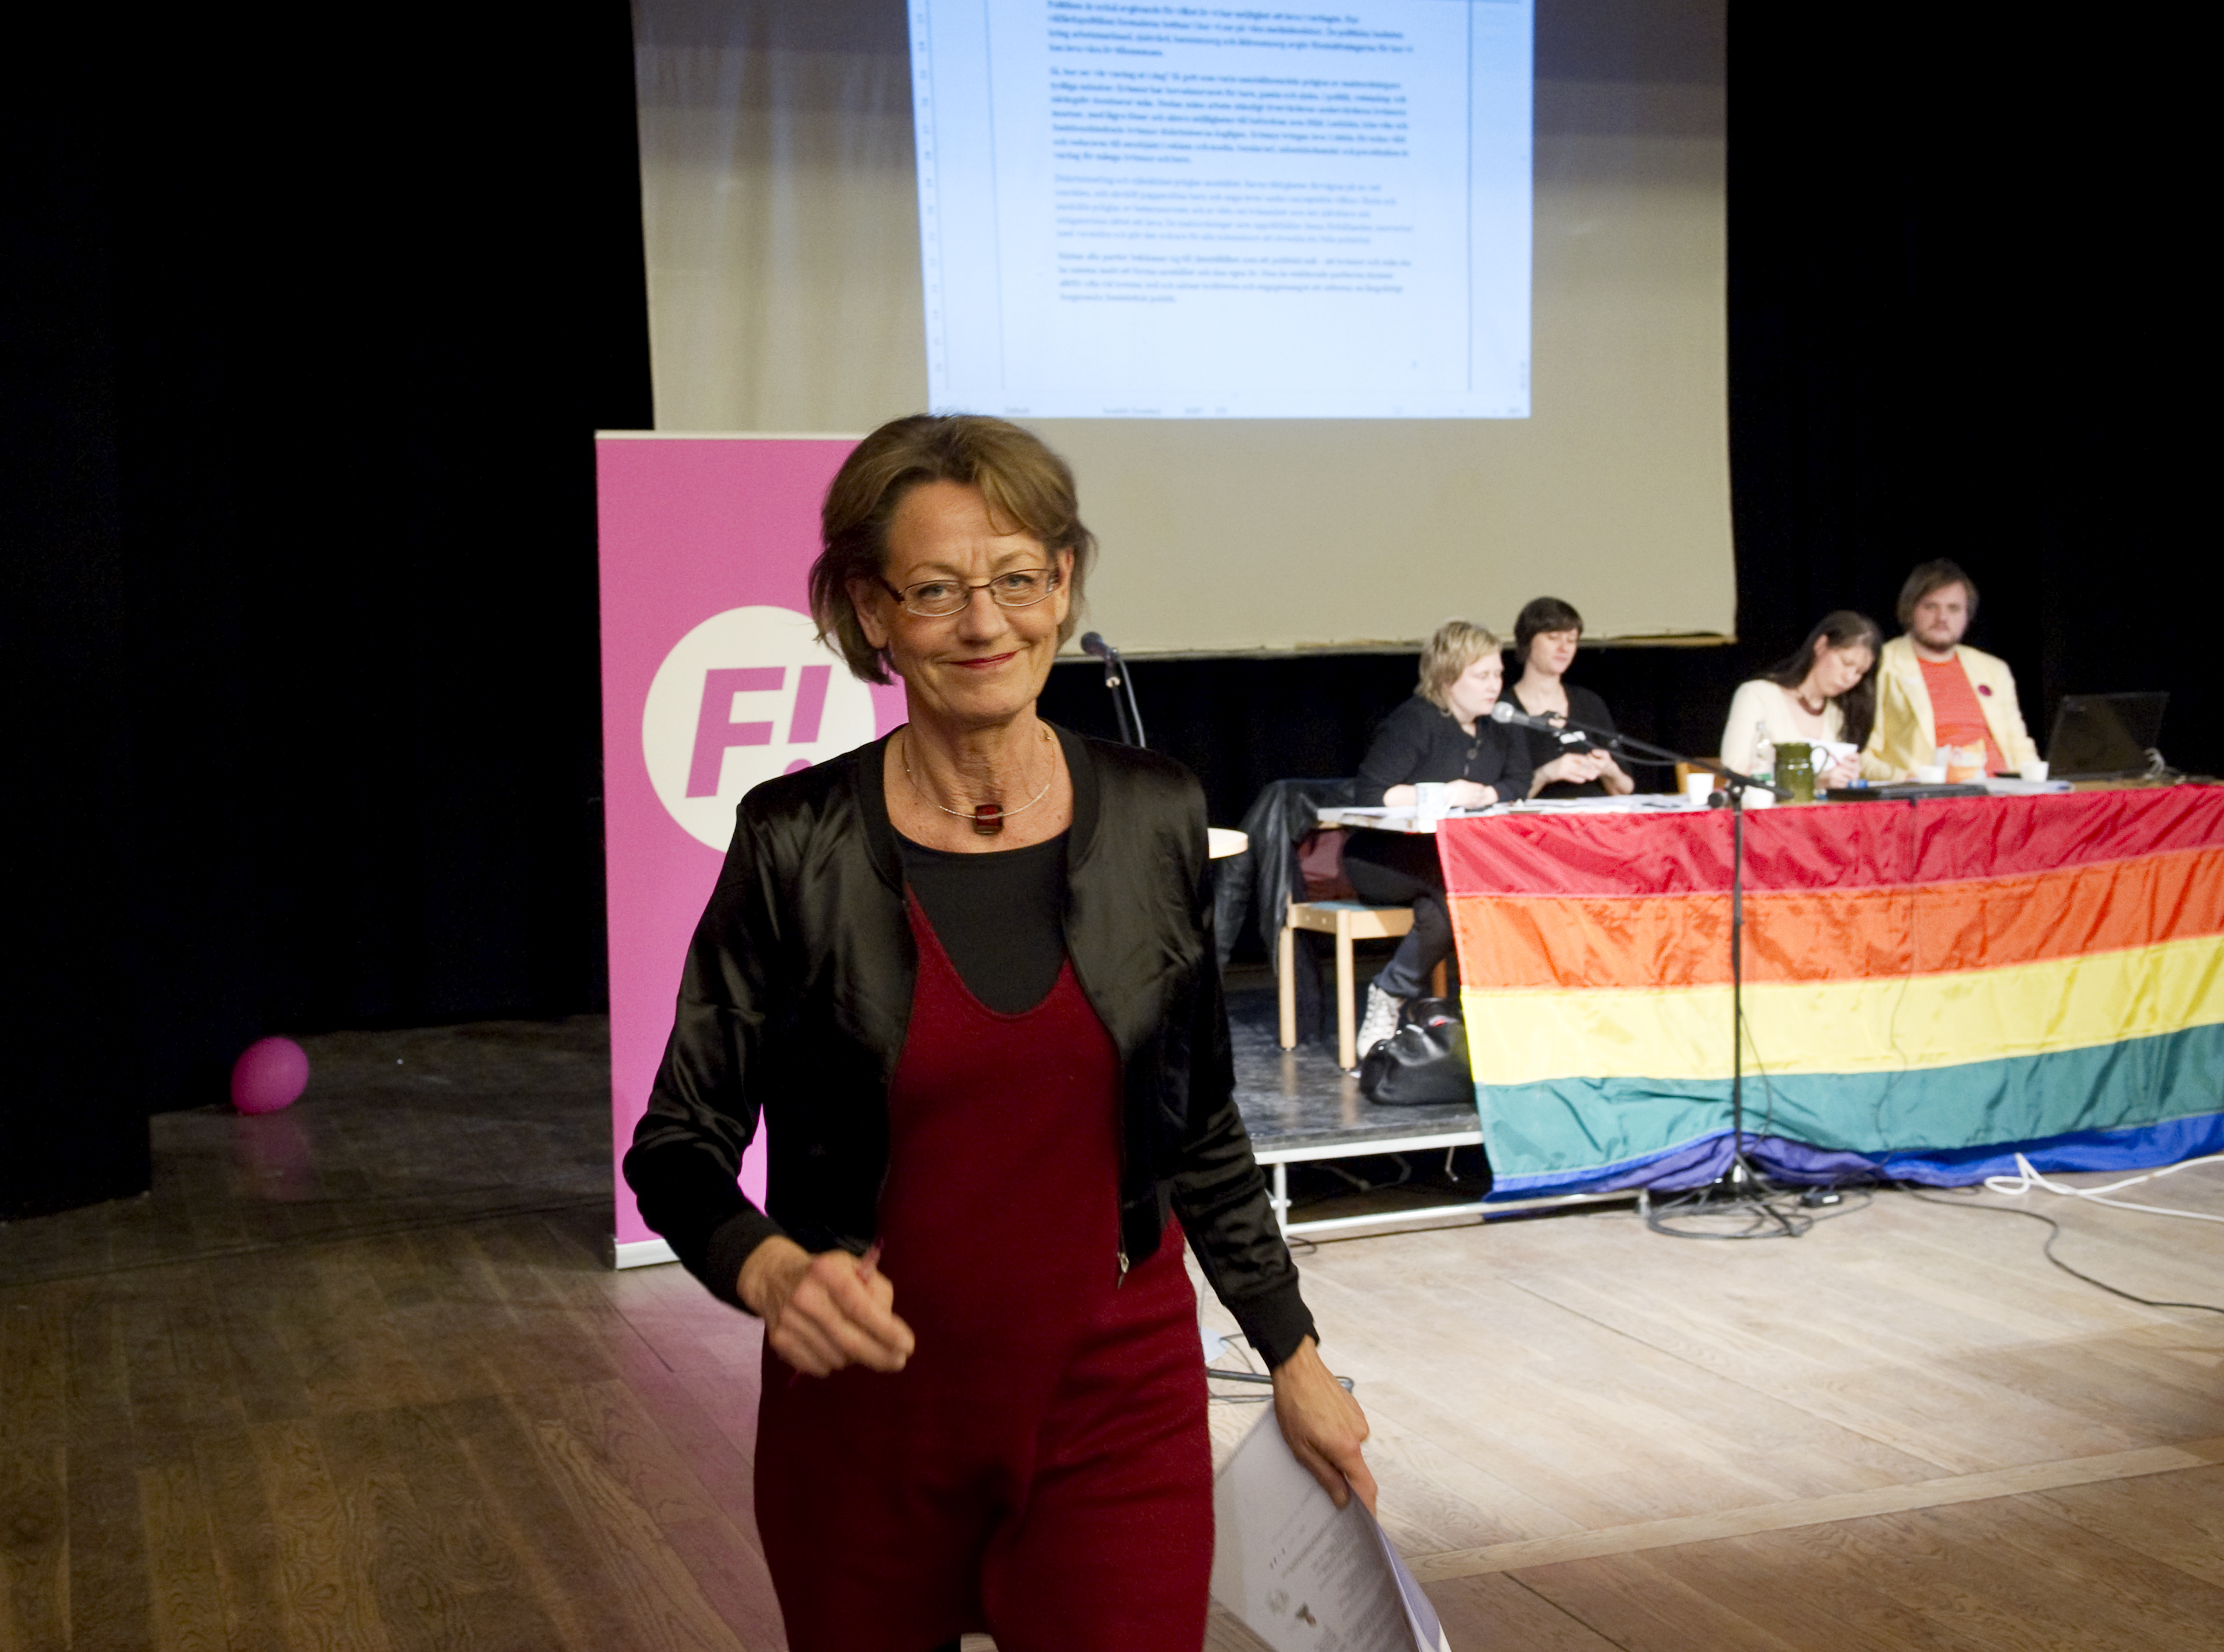 Feministiskt initiativ, Riksdagsvalet 2010, Lönediskriminering, Gudrun Schyman, Arbetsmarknad